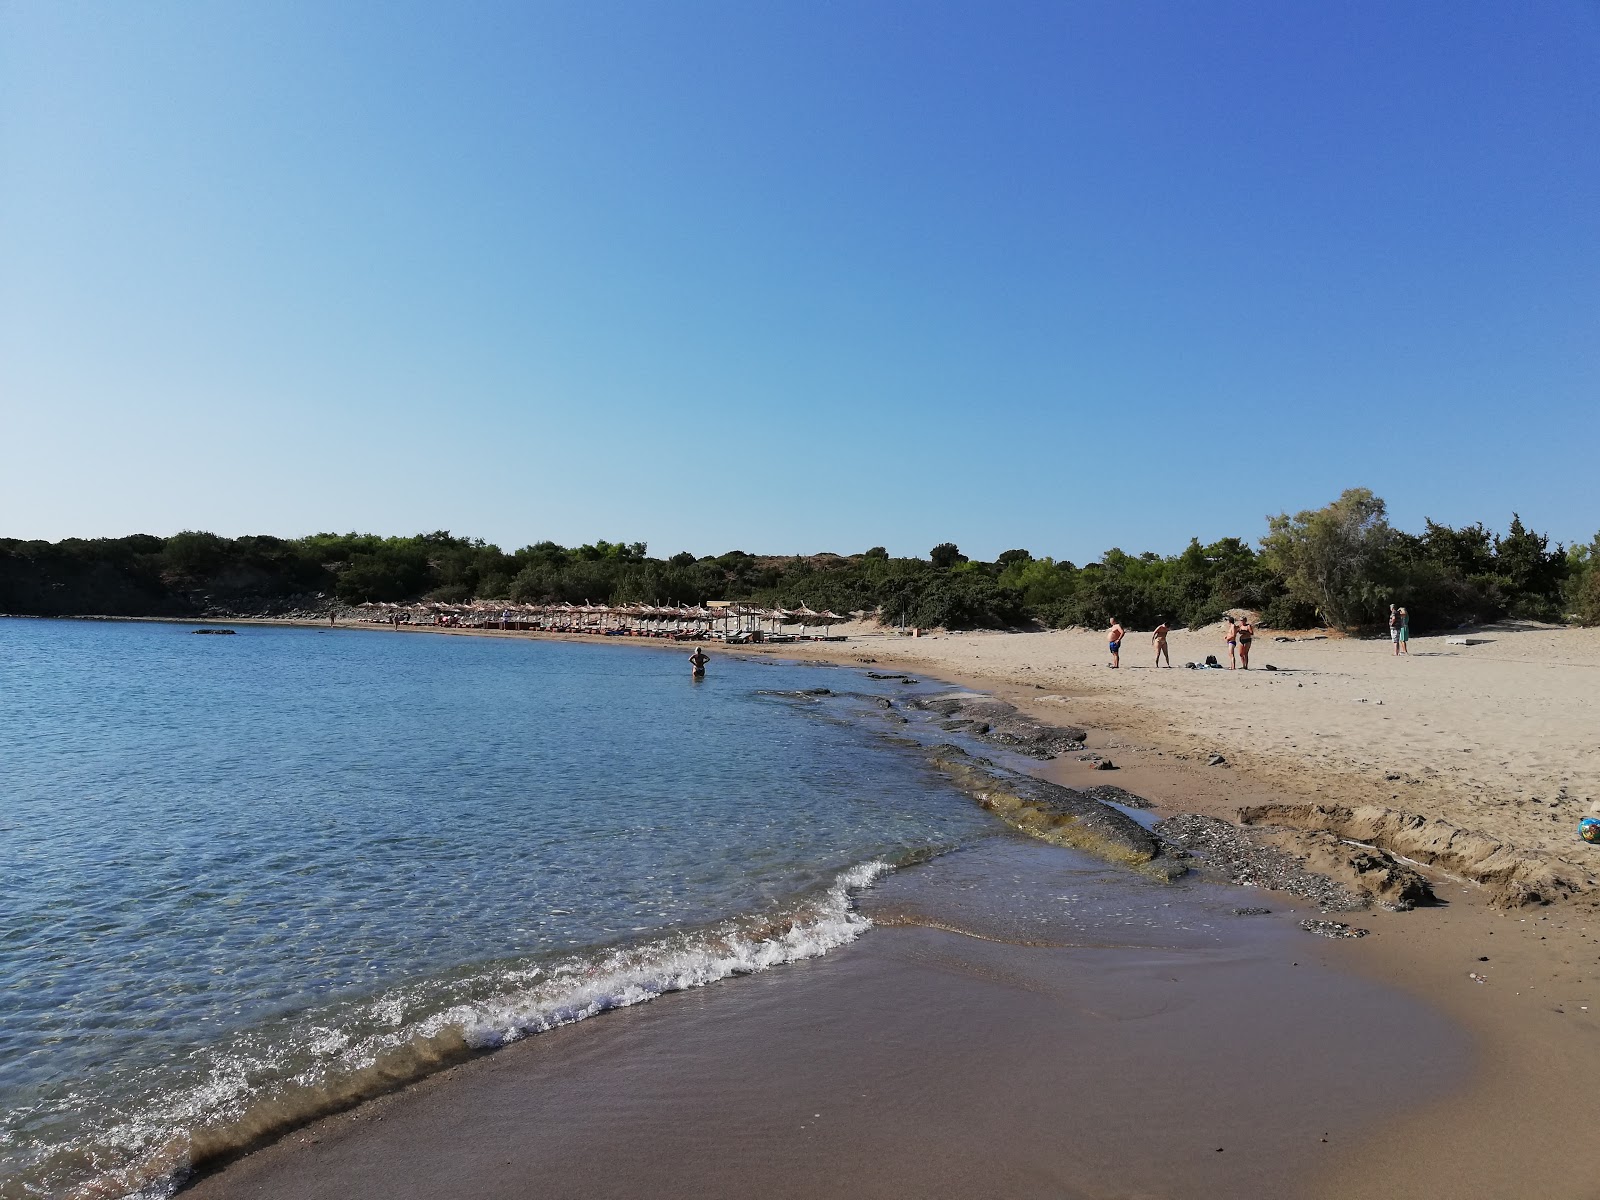 Glistra Plajı'in fotoğrafı parlak kum yüzey ile